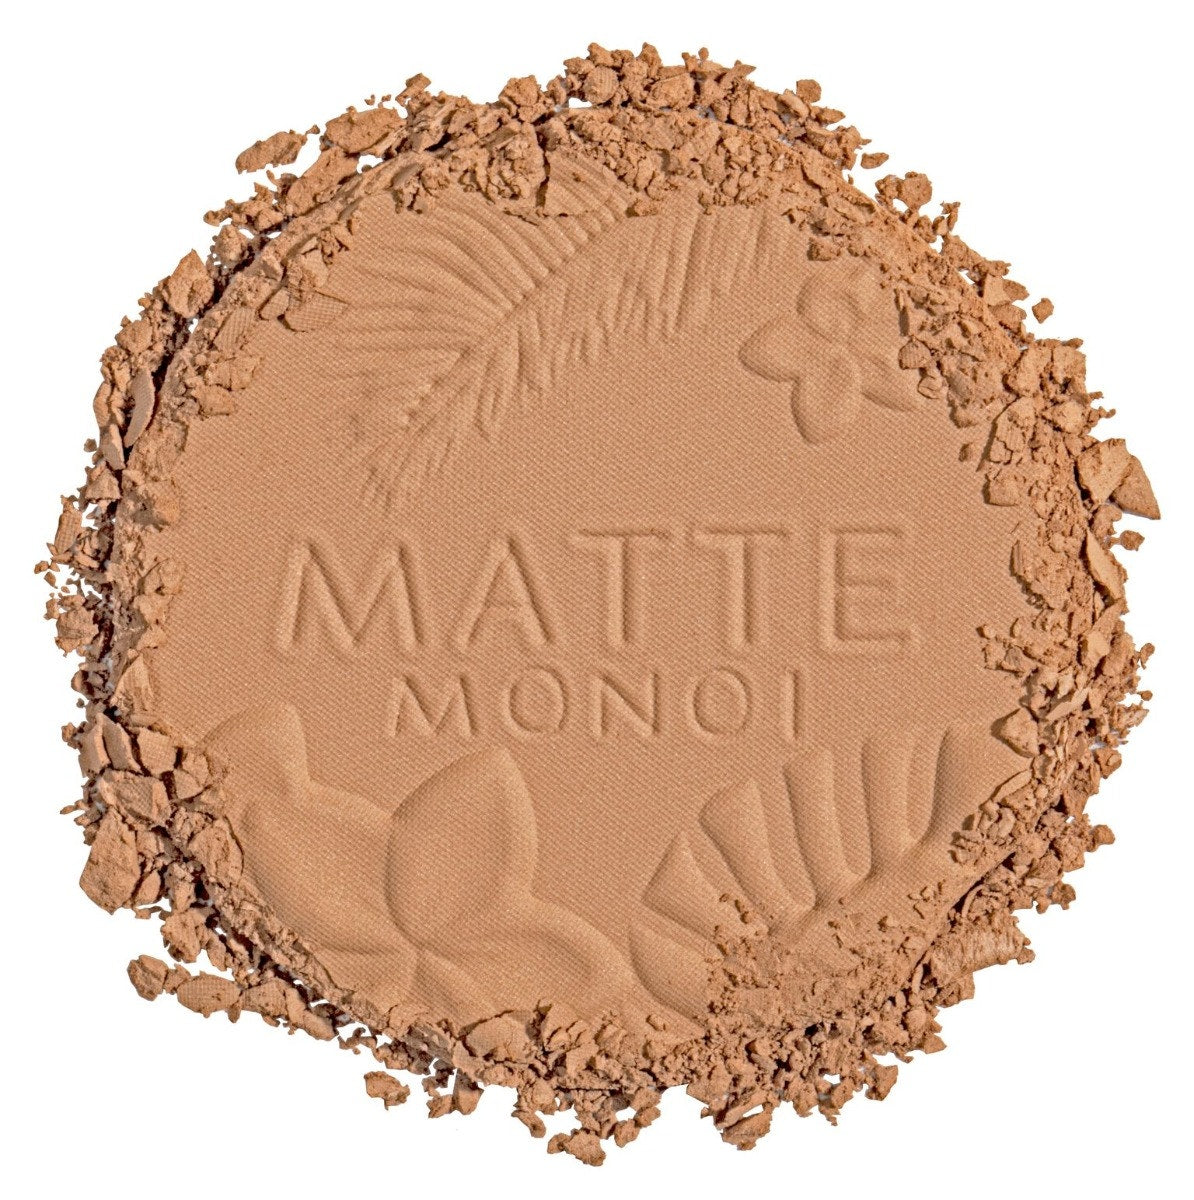 Matte Monoi Butter Bronzer